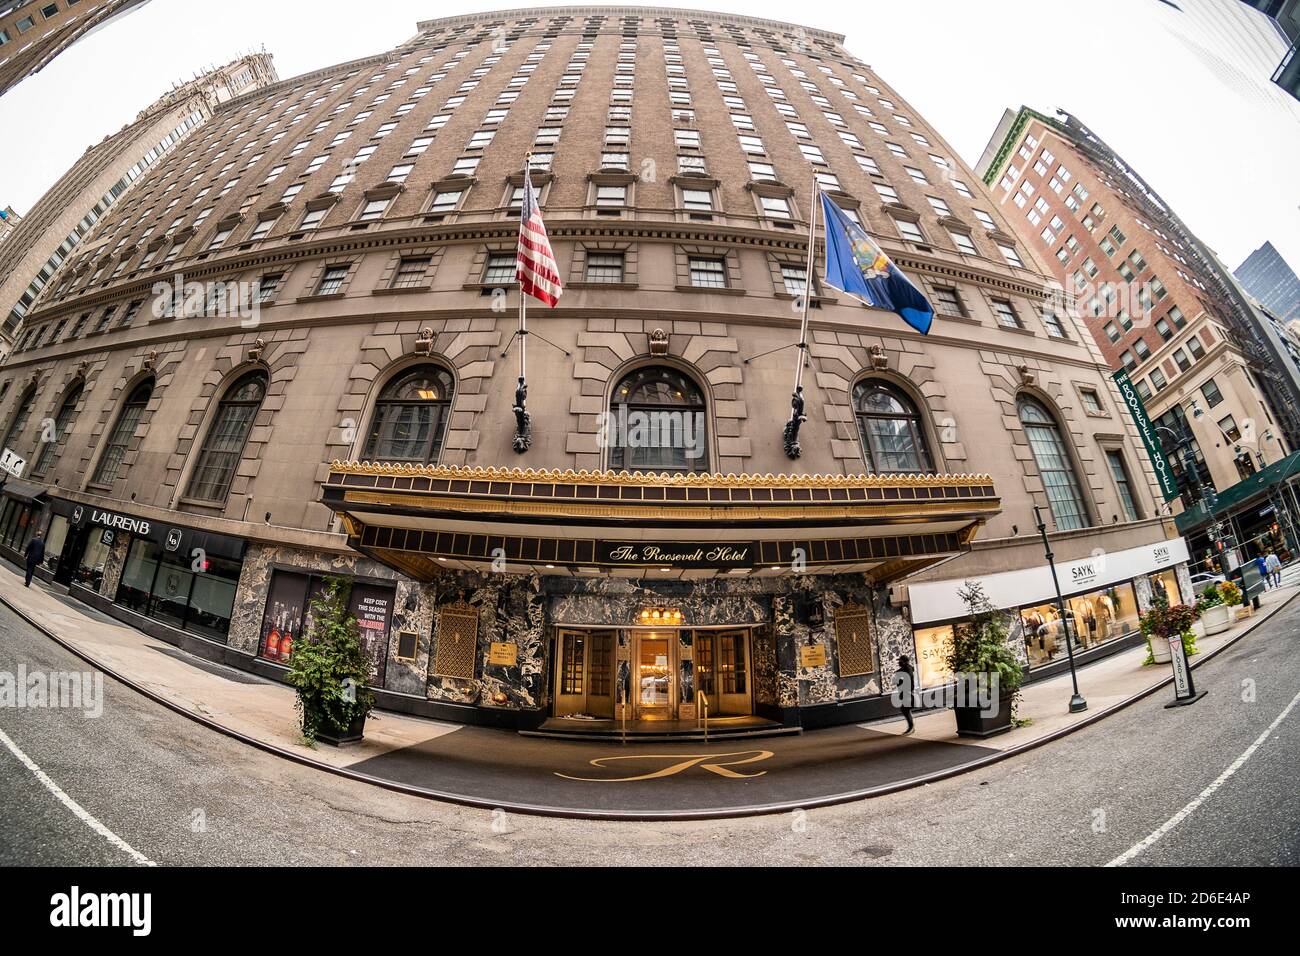 Le Roosevelt Hotel à Midtown Manhattan à New York le dimanche 11 octobre 2020. Cet hôtel de 96 ans a annoncé sa fermeture à la fin du mois d'octobre en raison de l'impact de la pandémie COVID-19. Cet hôtel, qui appartient à Pakistan International Airlines, a connu une chute phénoménale des réservations, ainsi que le reste de l’industrie hôtelière de la ville. (© Richard B. Levine) Banque D'Images